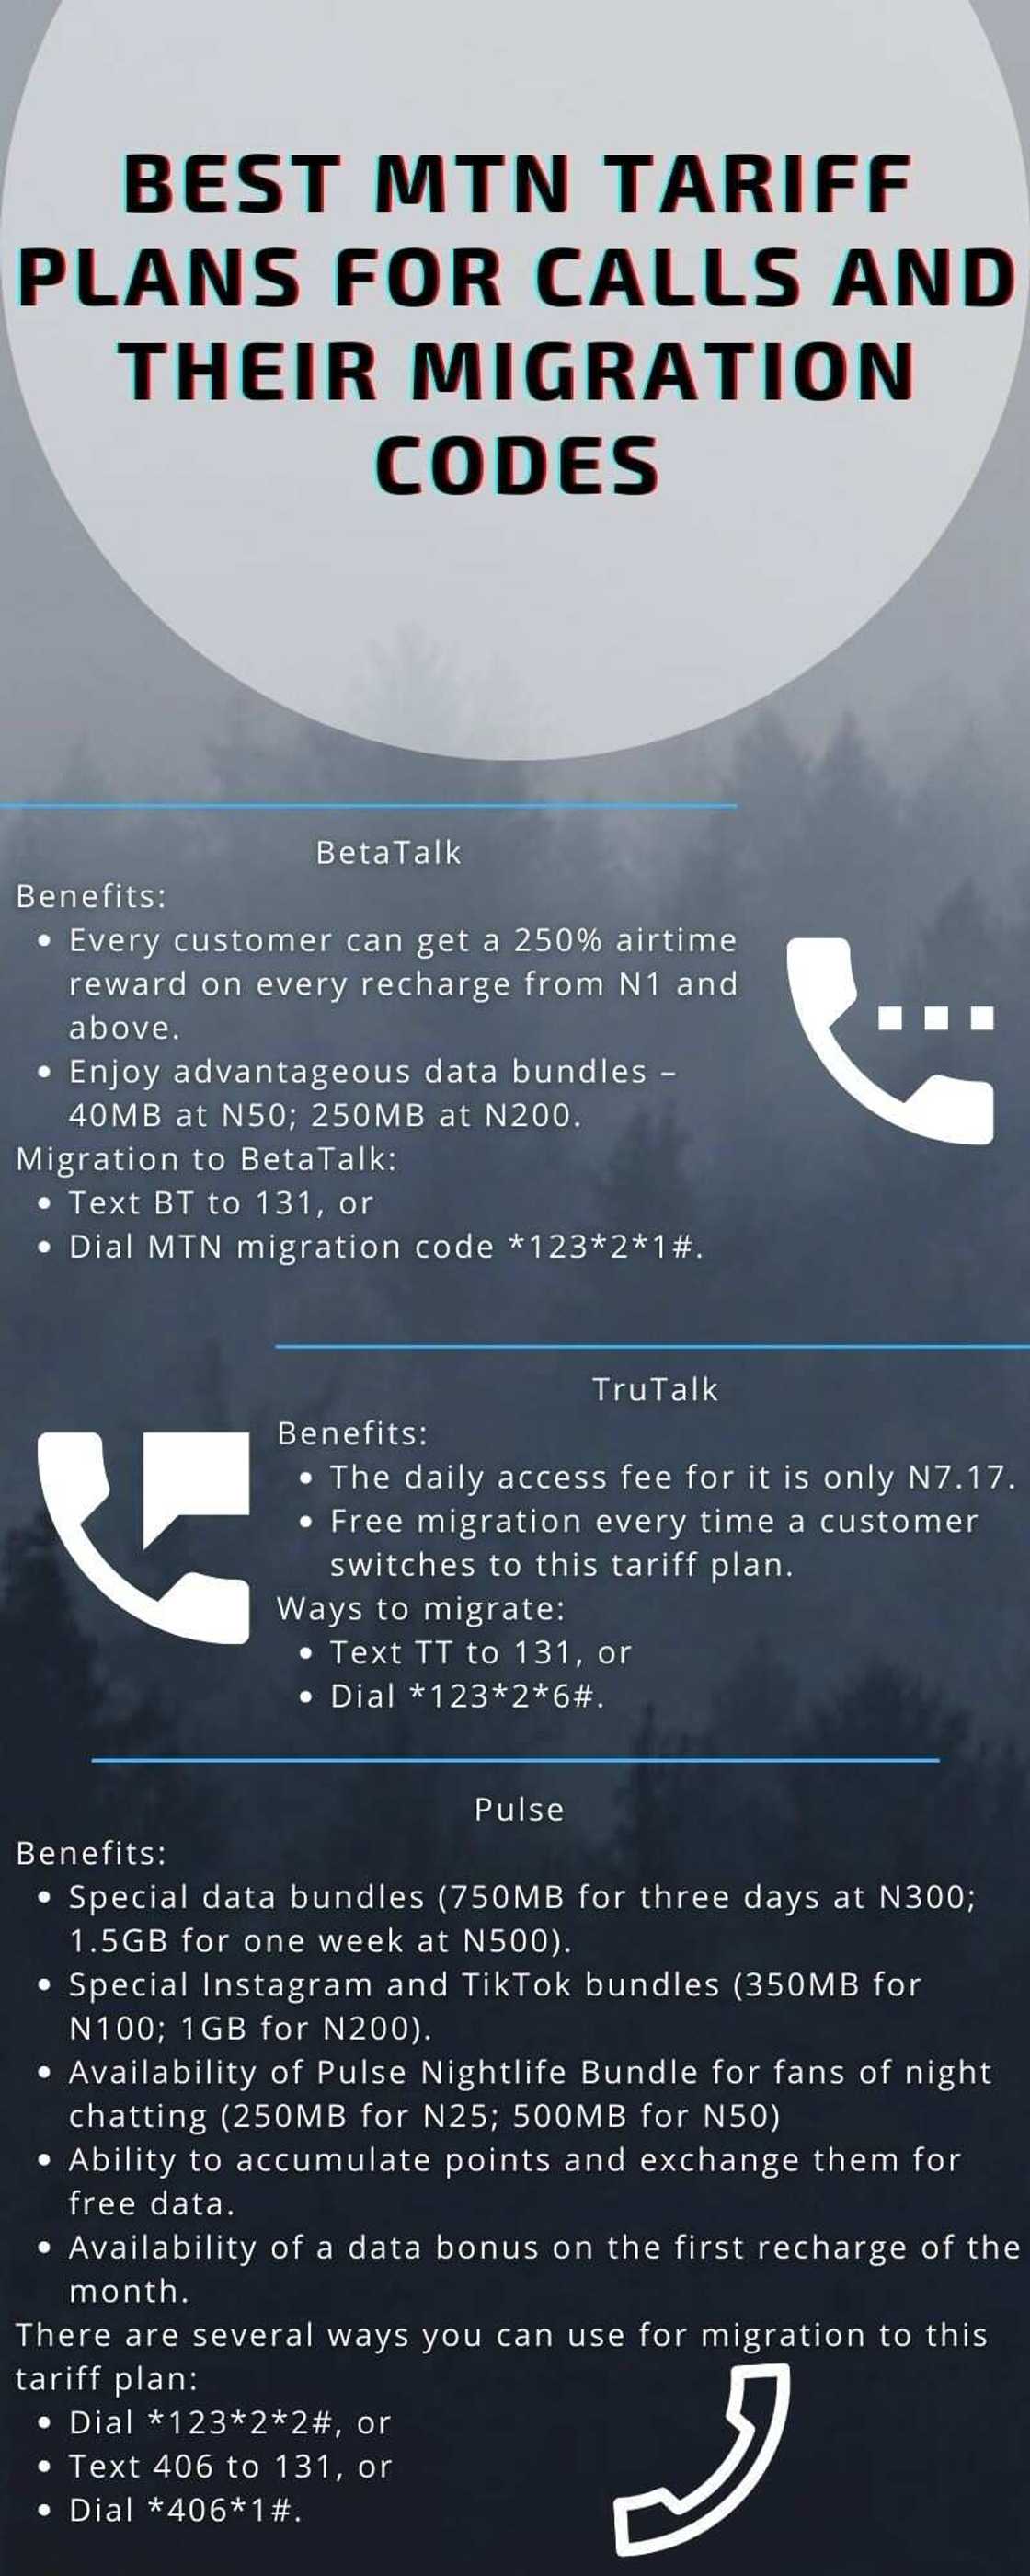 Best MTN tariff plans